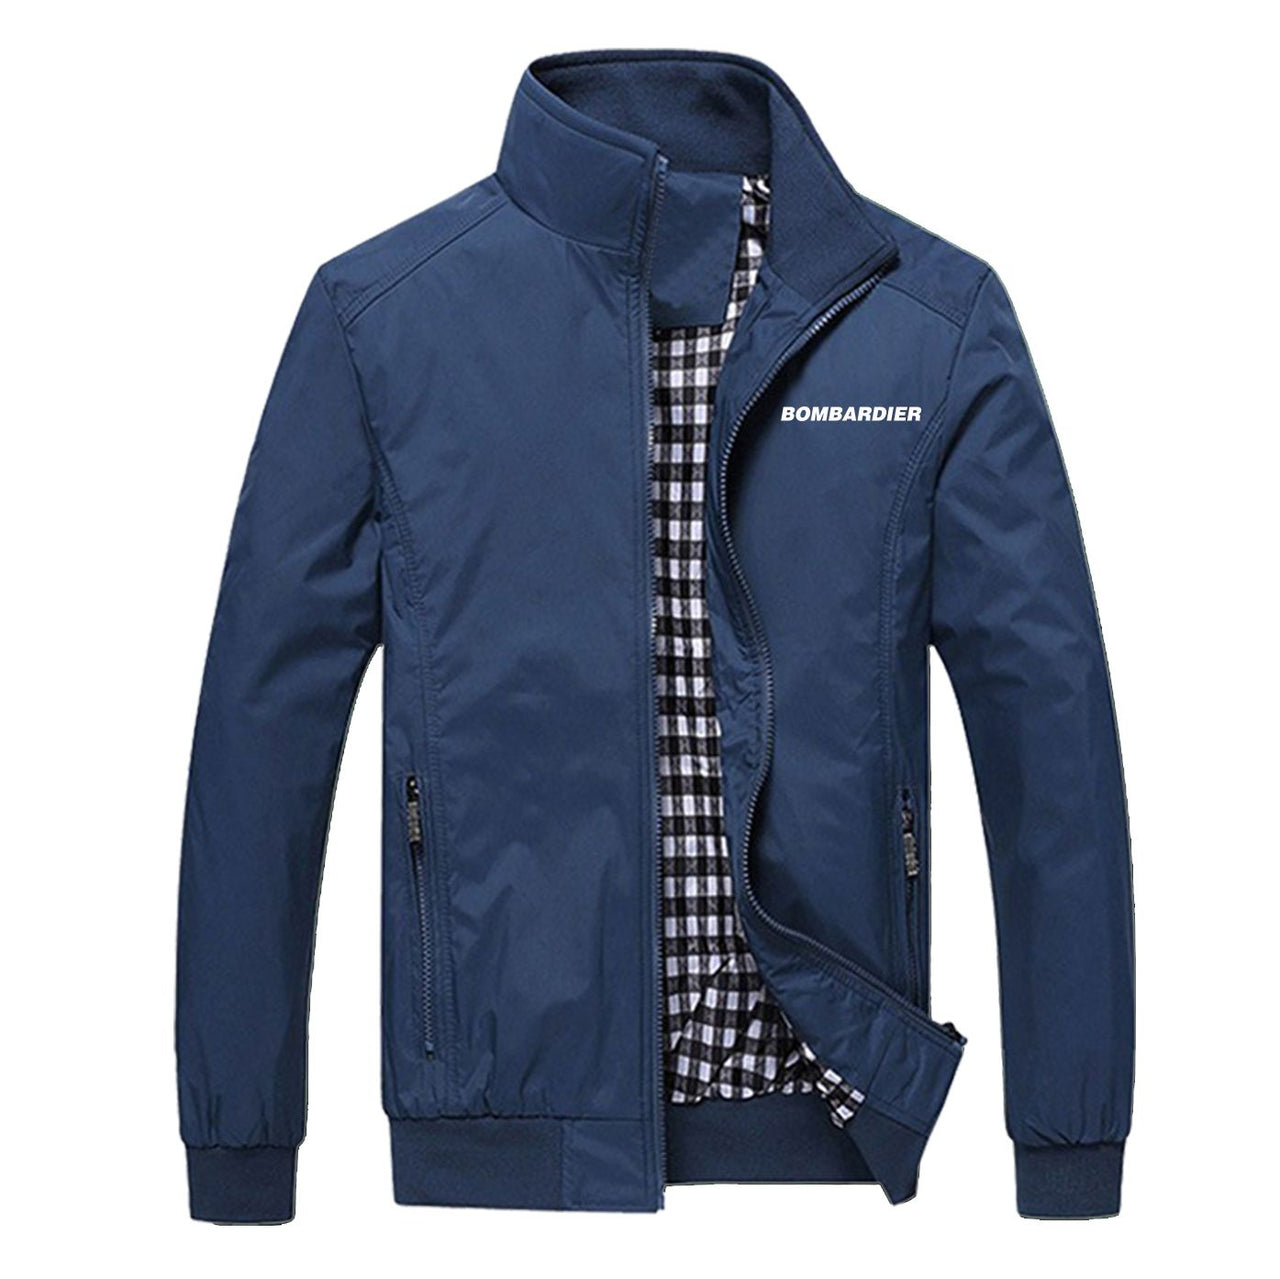 Bombardier & Text Designed Stylish Jackets